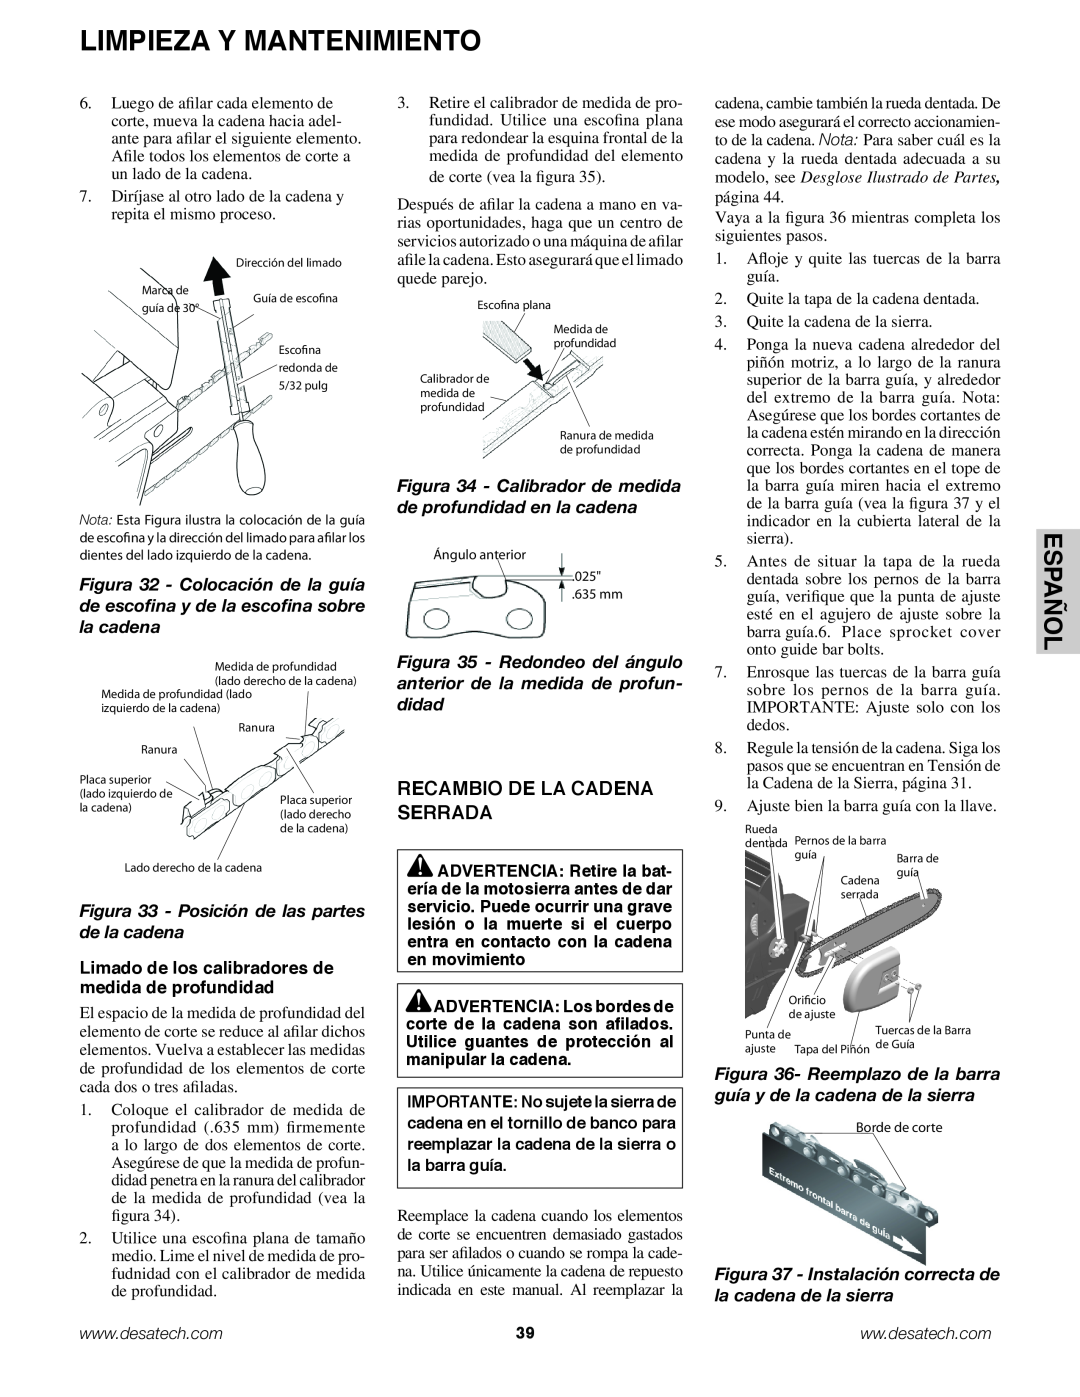 Remington Power Tools BS188A, BPS188A, BS188A owner manual Español, Recambio de la cadena serrada 